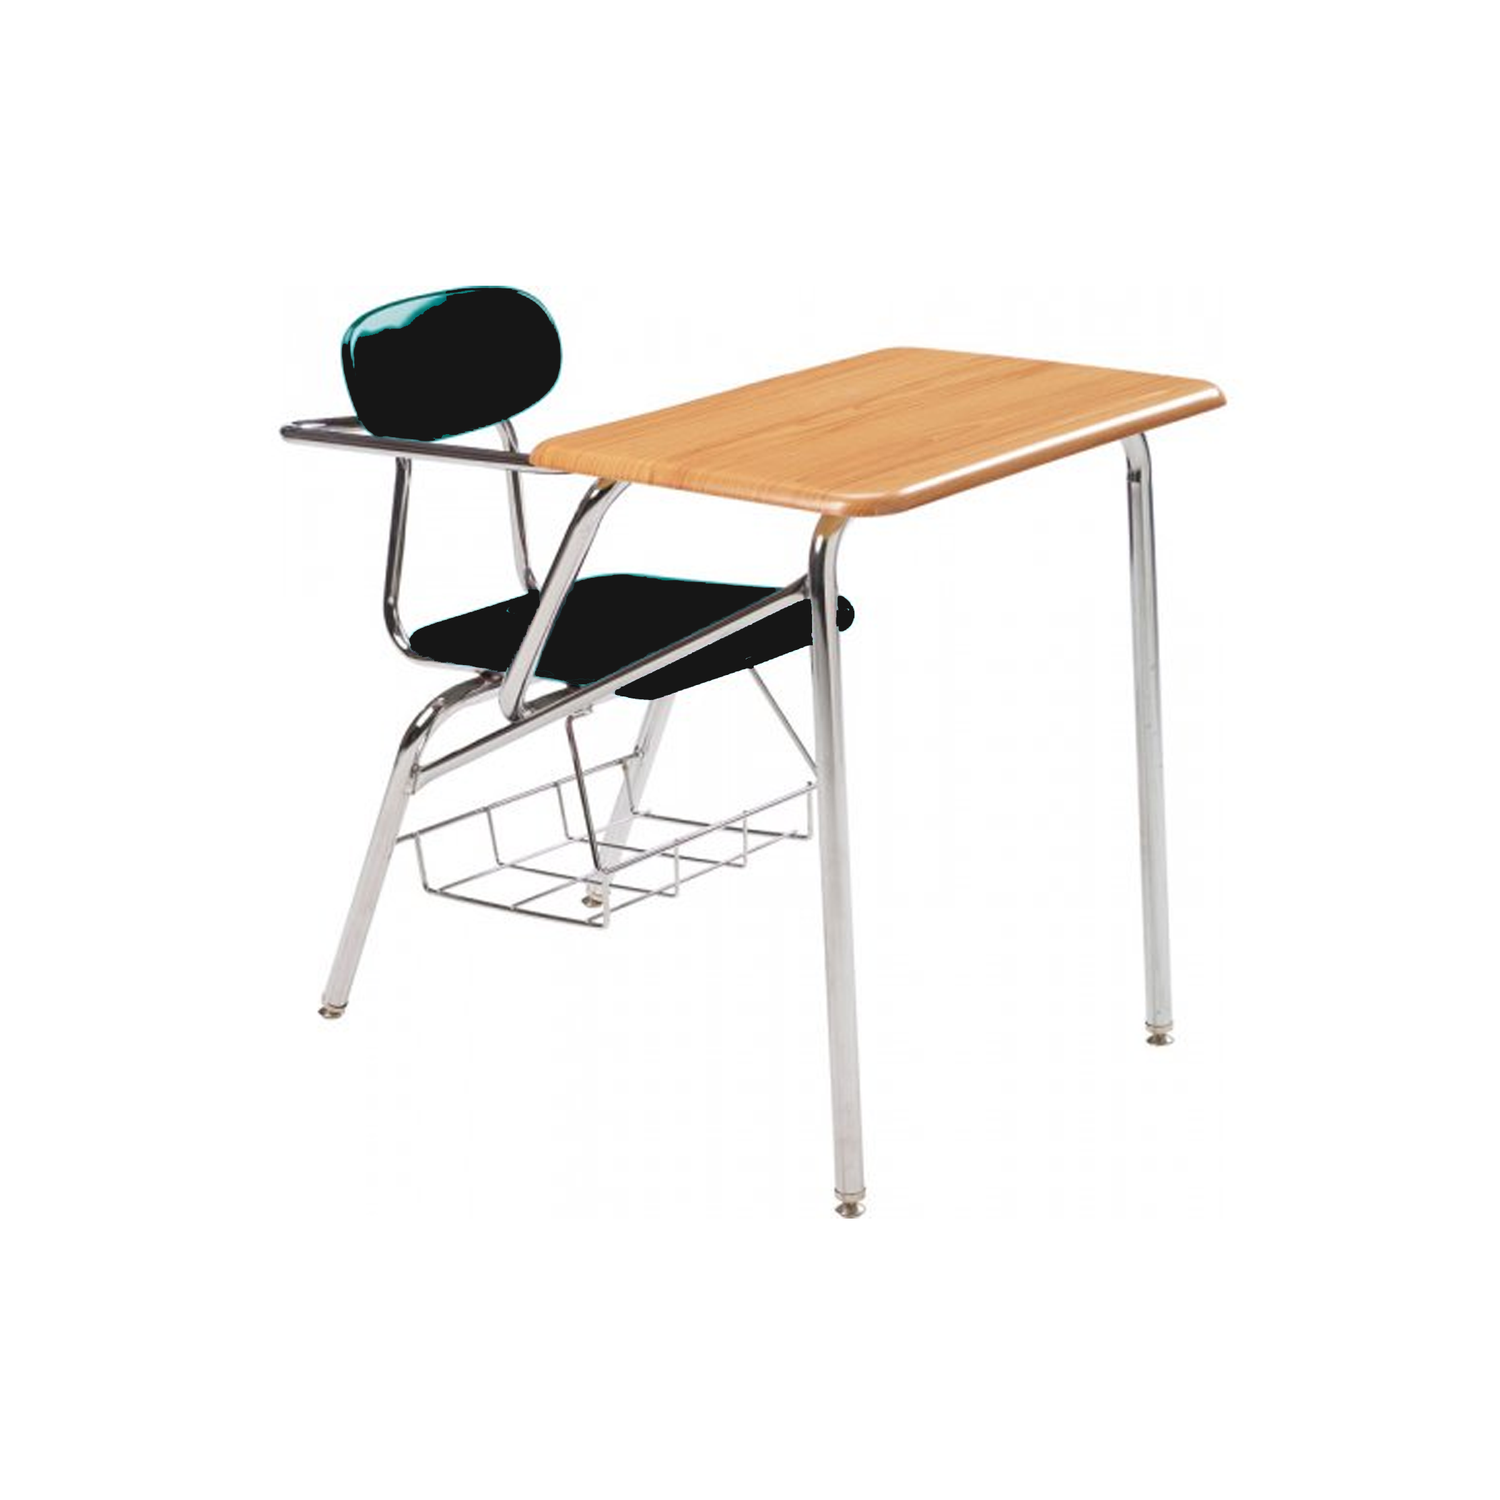 Combo Desk with Support Brace - RH- Lt Oak Woodstone - Black Seat - 18"H